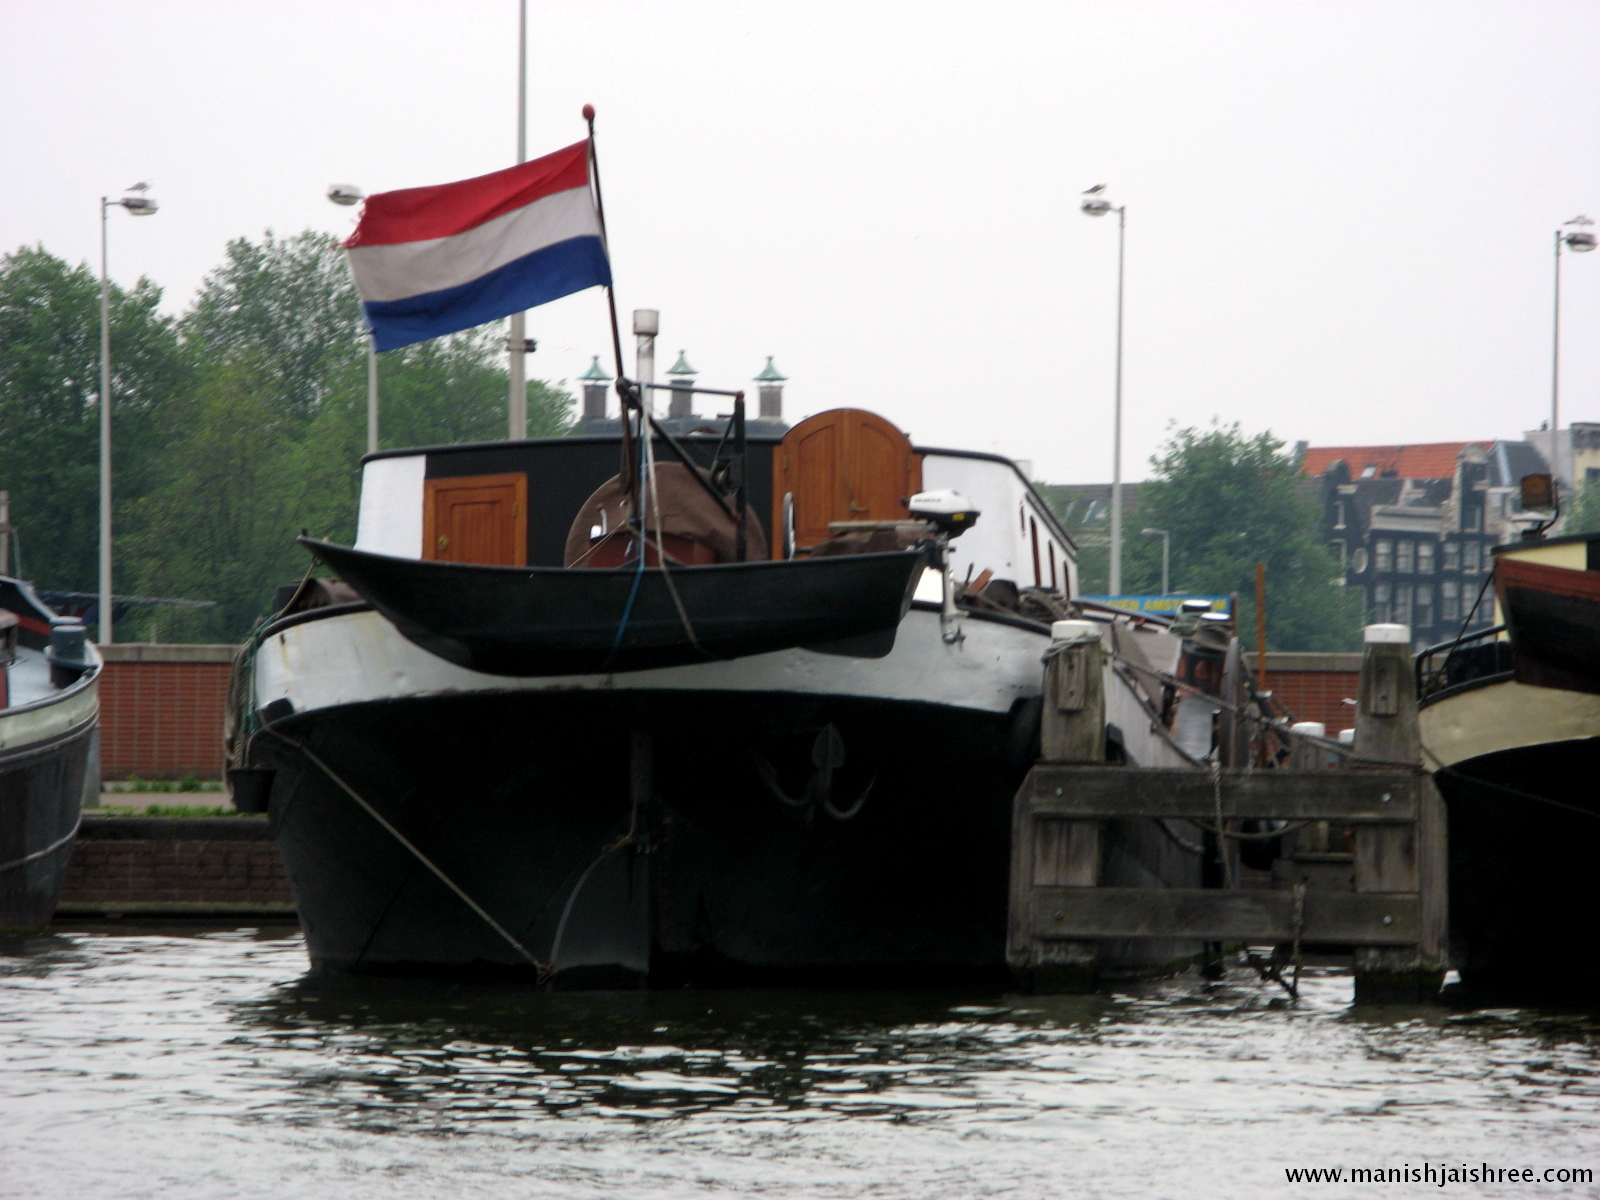 The Dutch tricolor